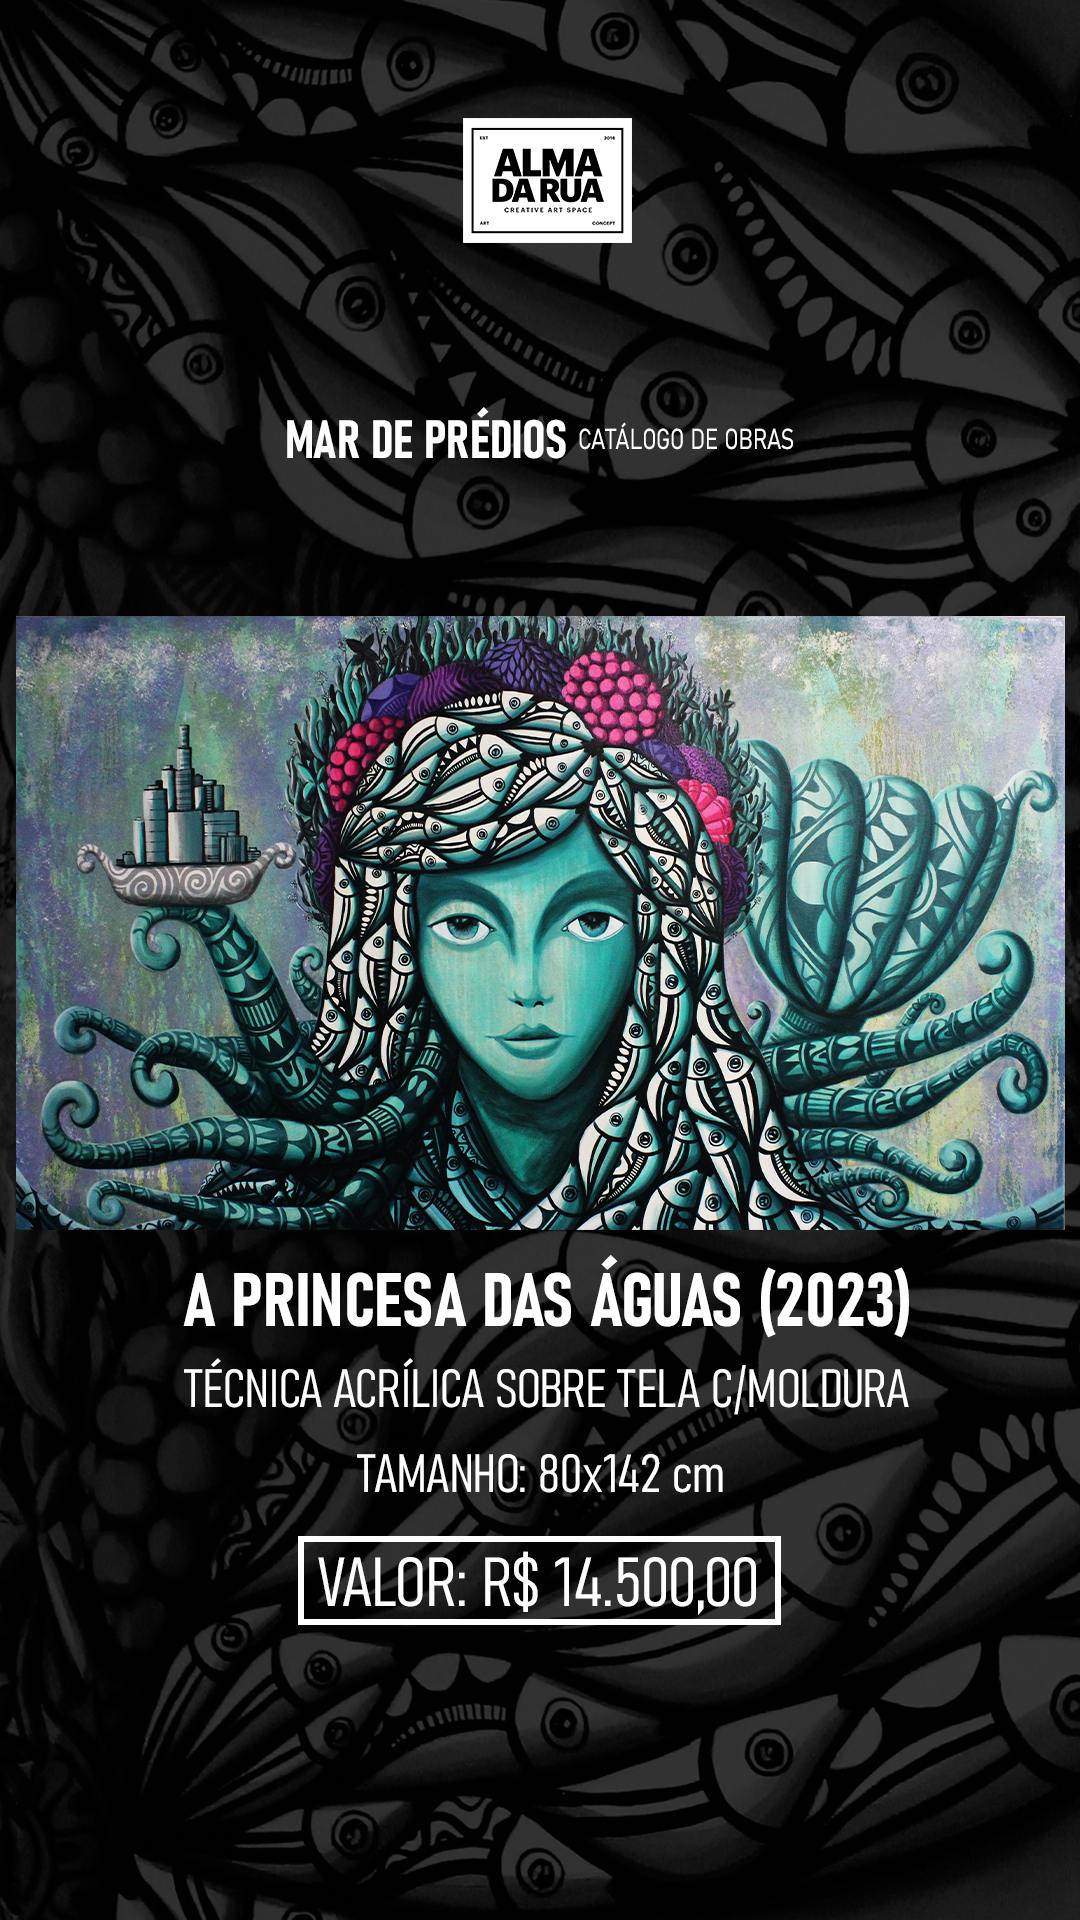 A Princesa das Águas Cadumen (2023)